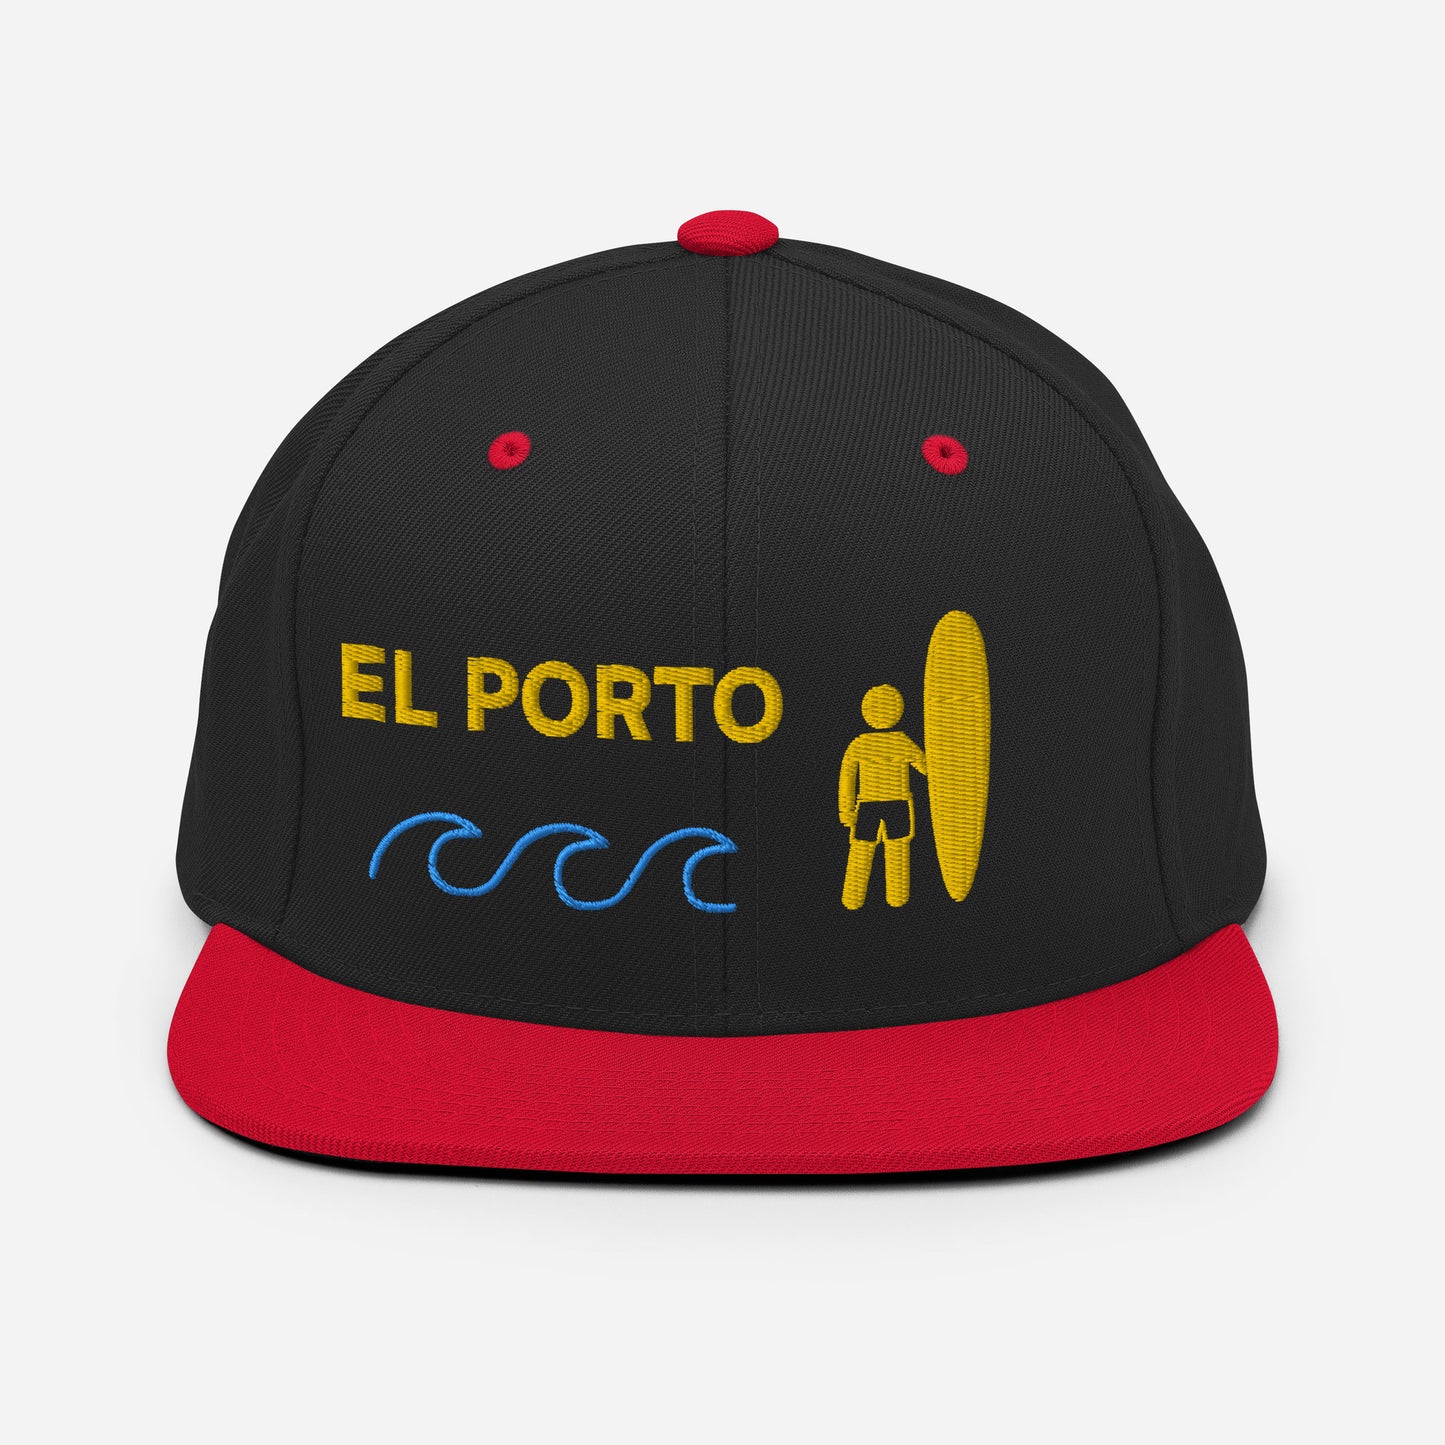 EL PORTO Manhattan Beach California - Locals Only Surfing Hat - Snapback Hat